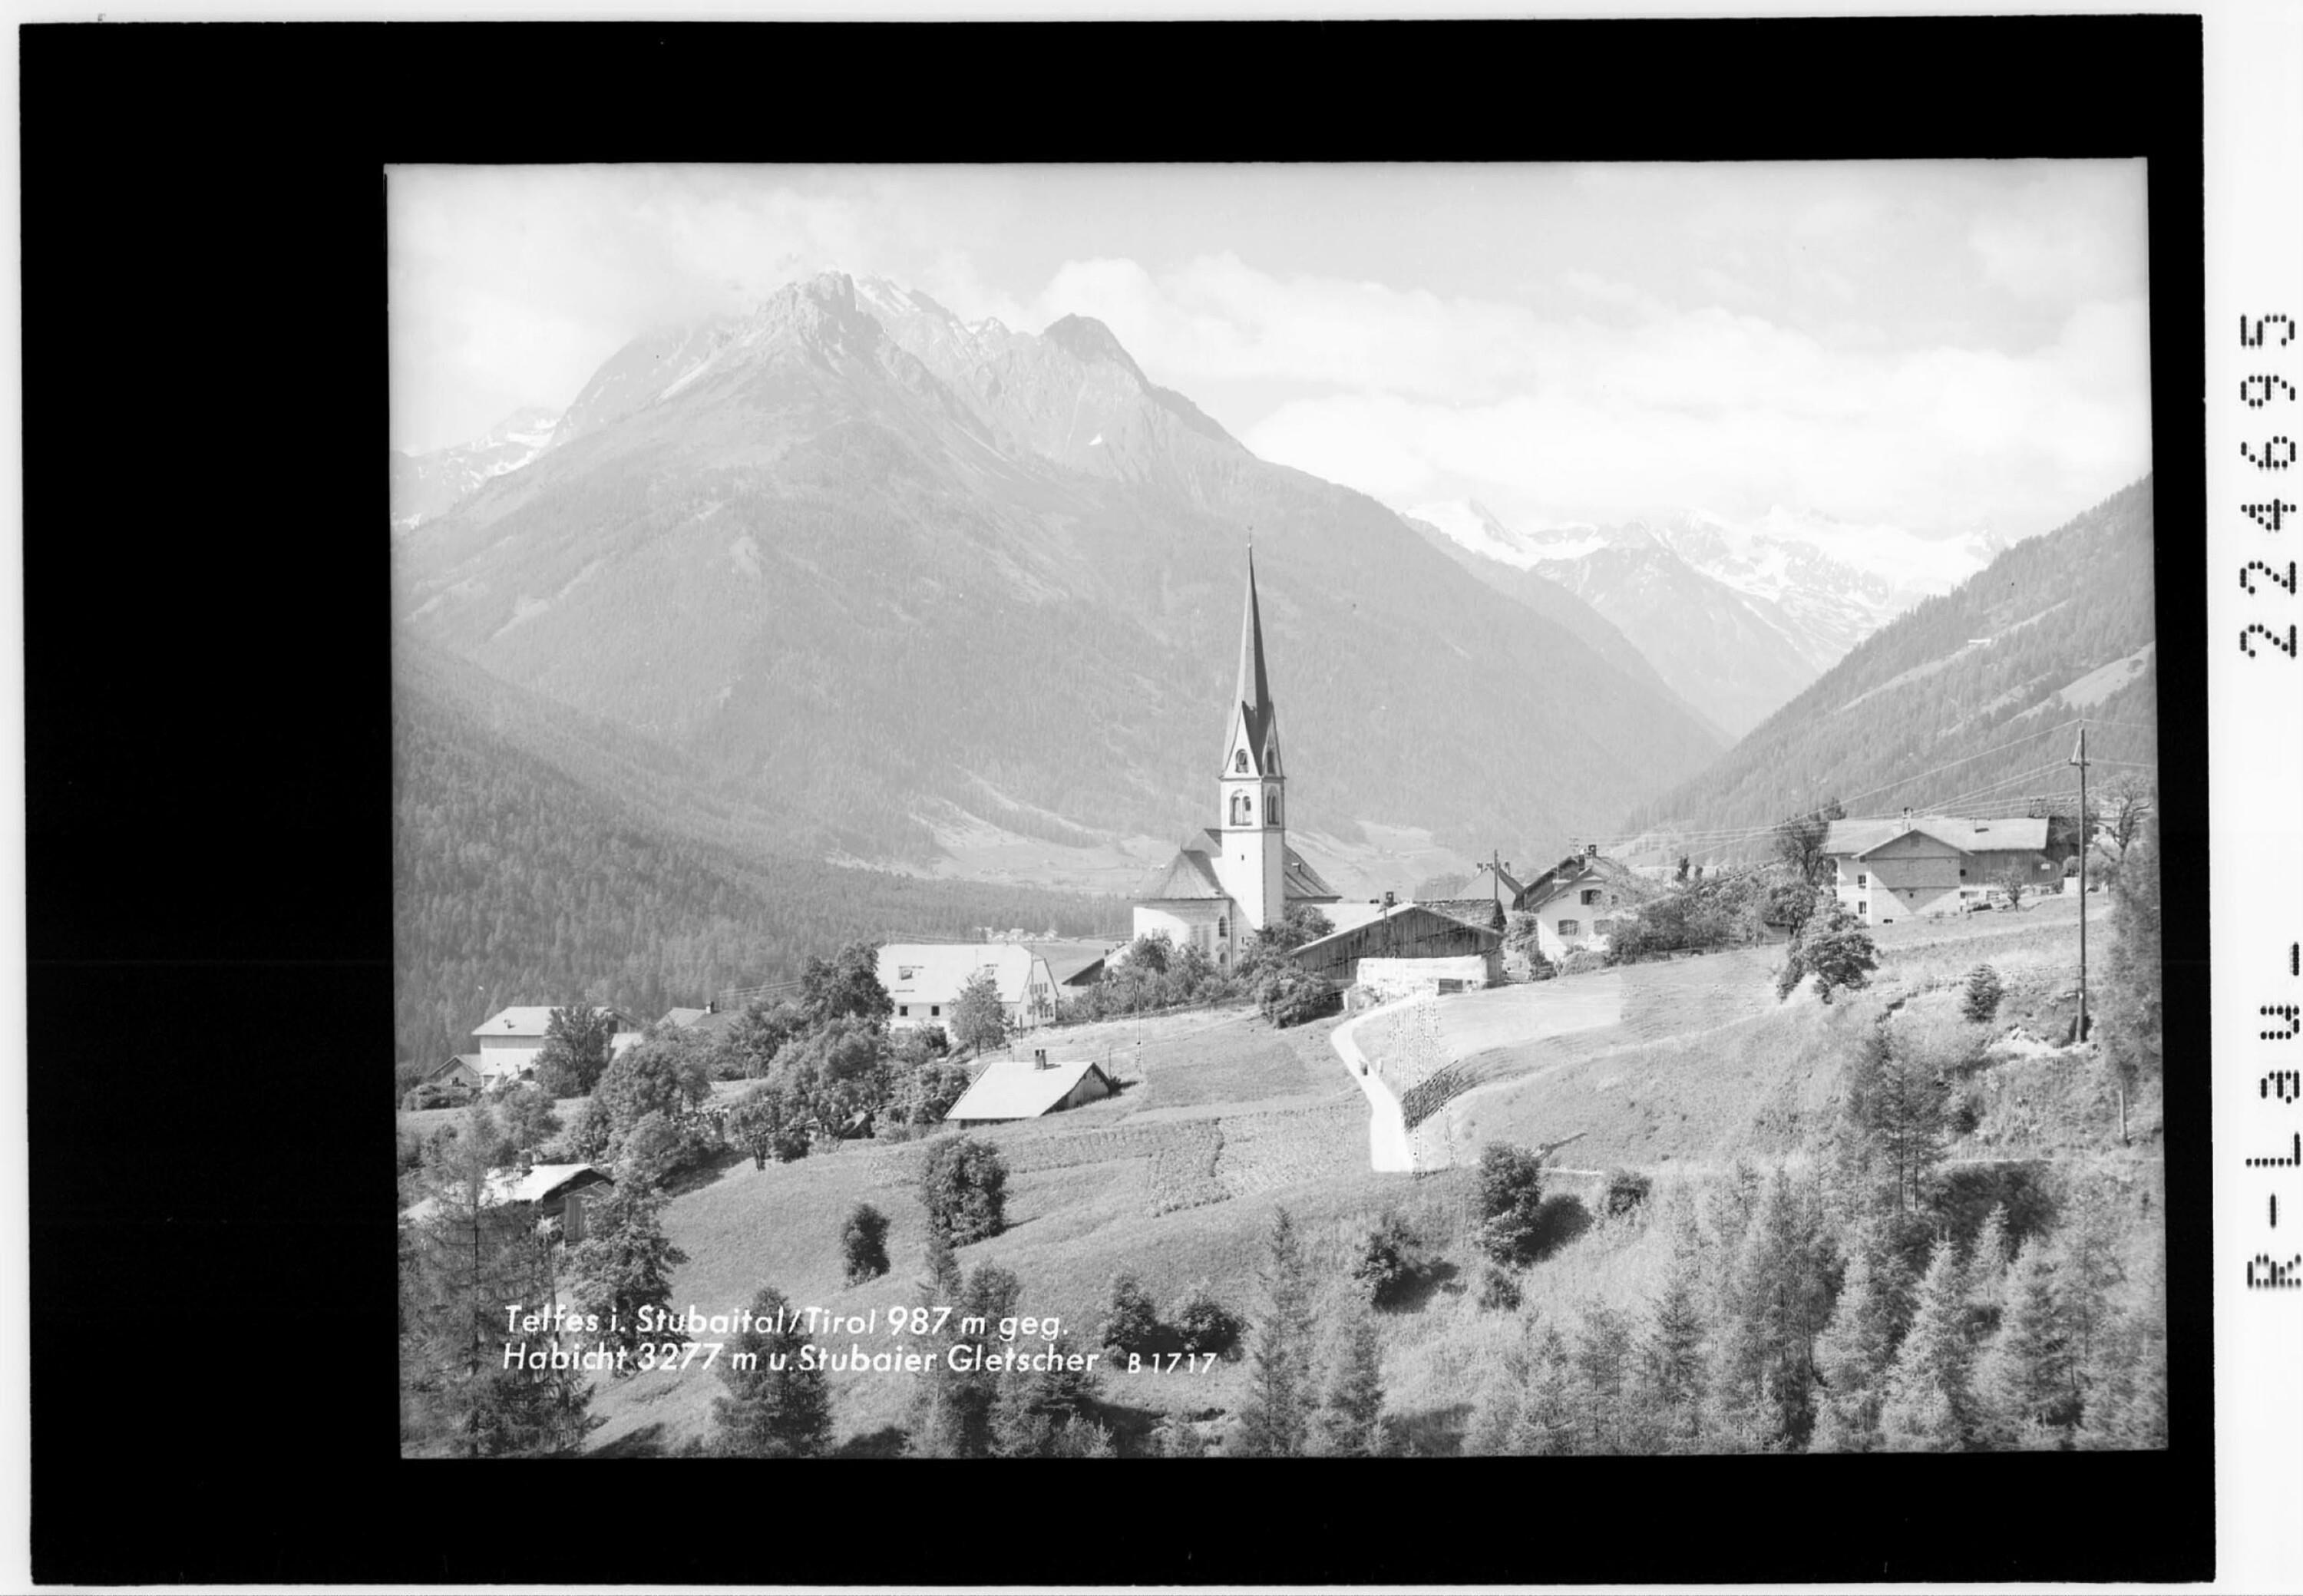 Telfes im Stubaital / Tirol 987 m gegen Habicht 3277 m und Stubaier Gletscher></div>


    <hr>
    <div class=